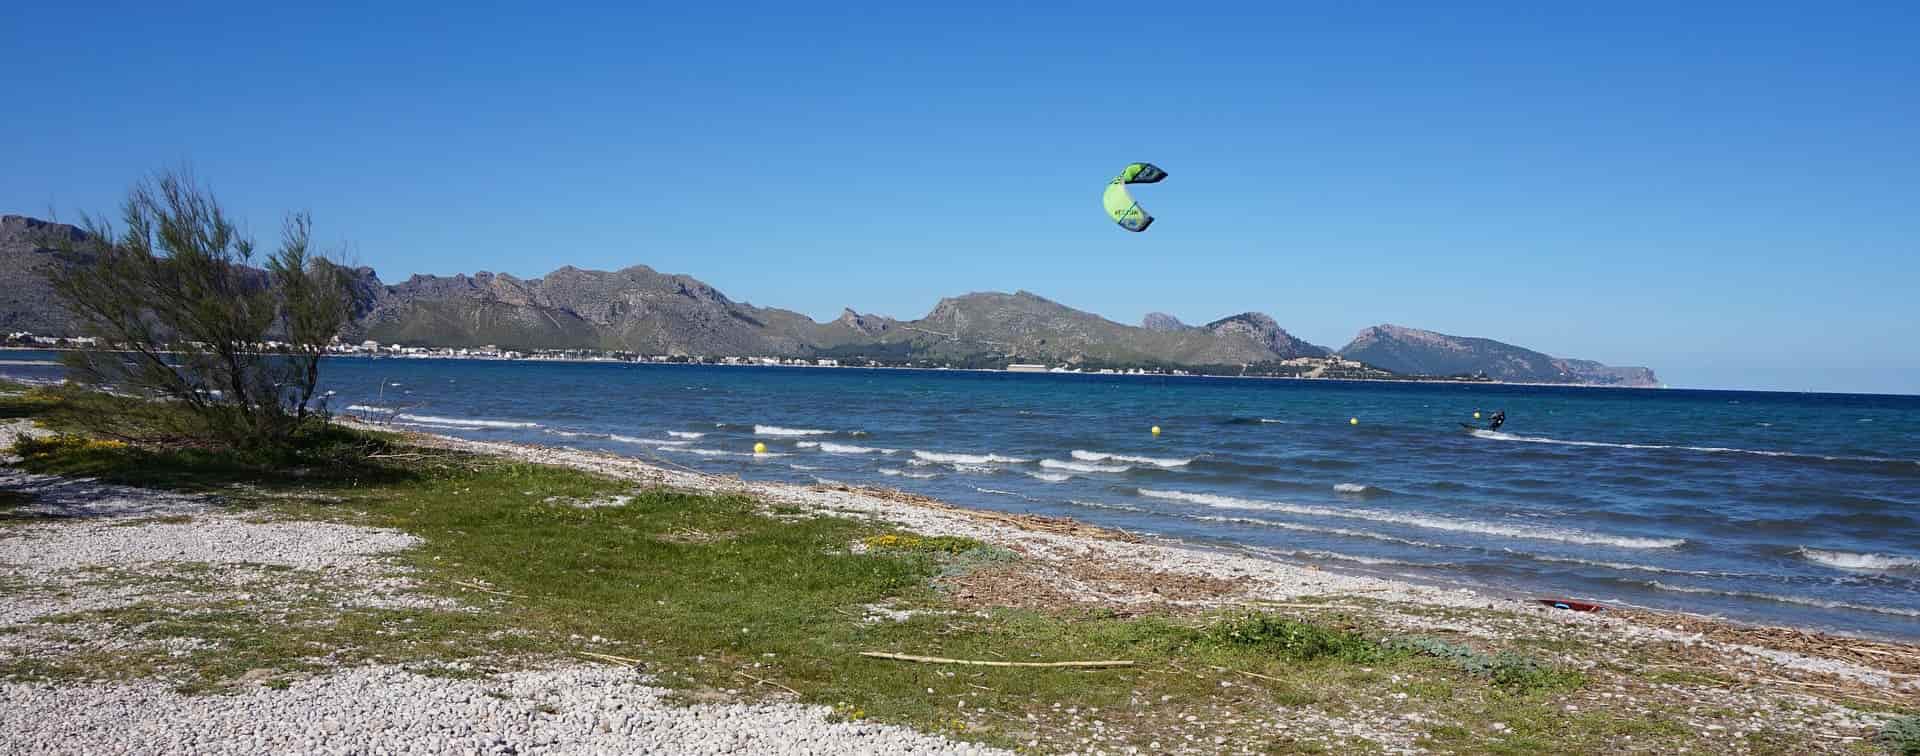 Kitesurfer volando en la Playa de Llenaire (en Puerto de Pollensa)